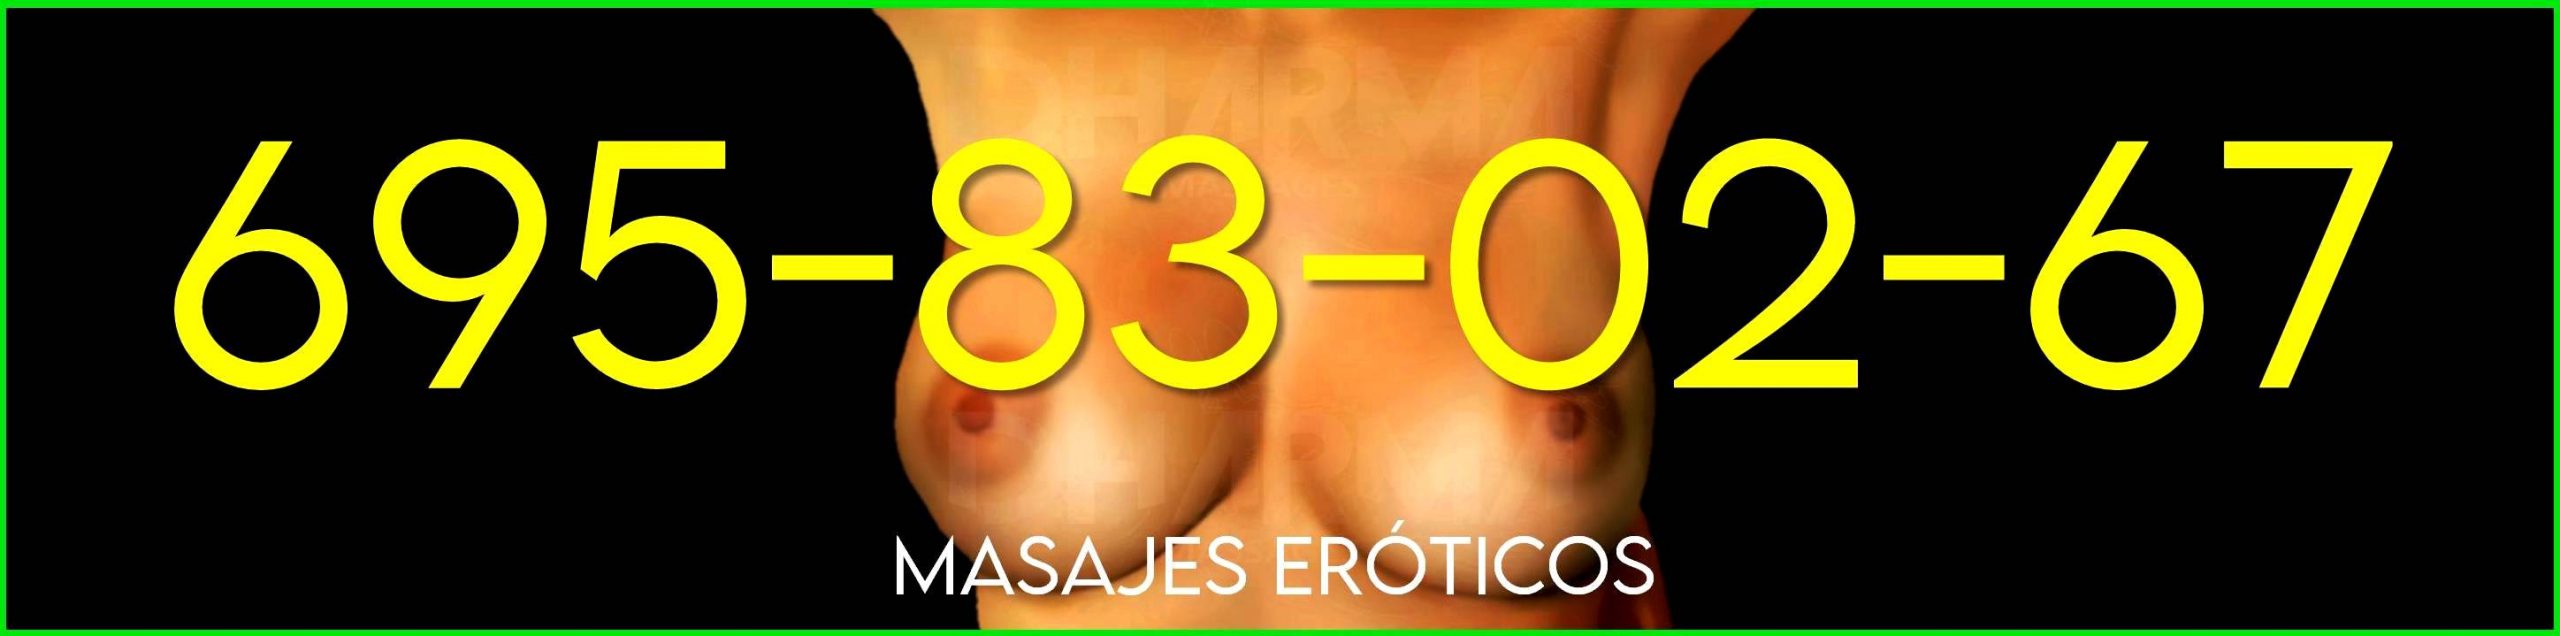 masajistas-eroticas-en-madrid-banner